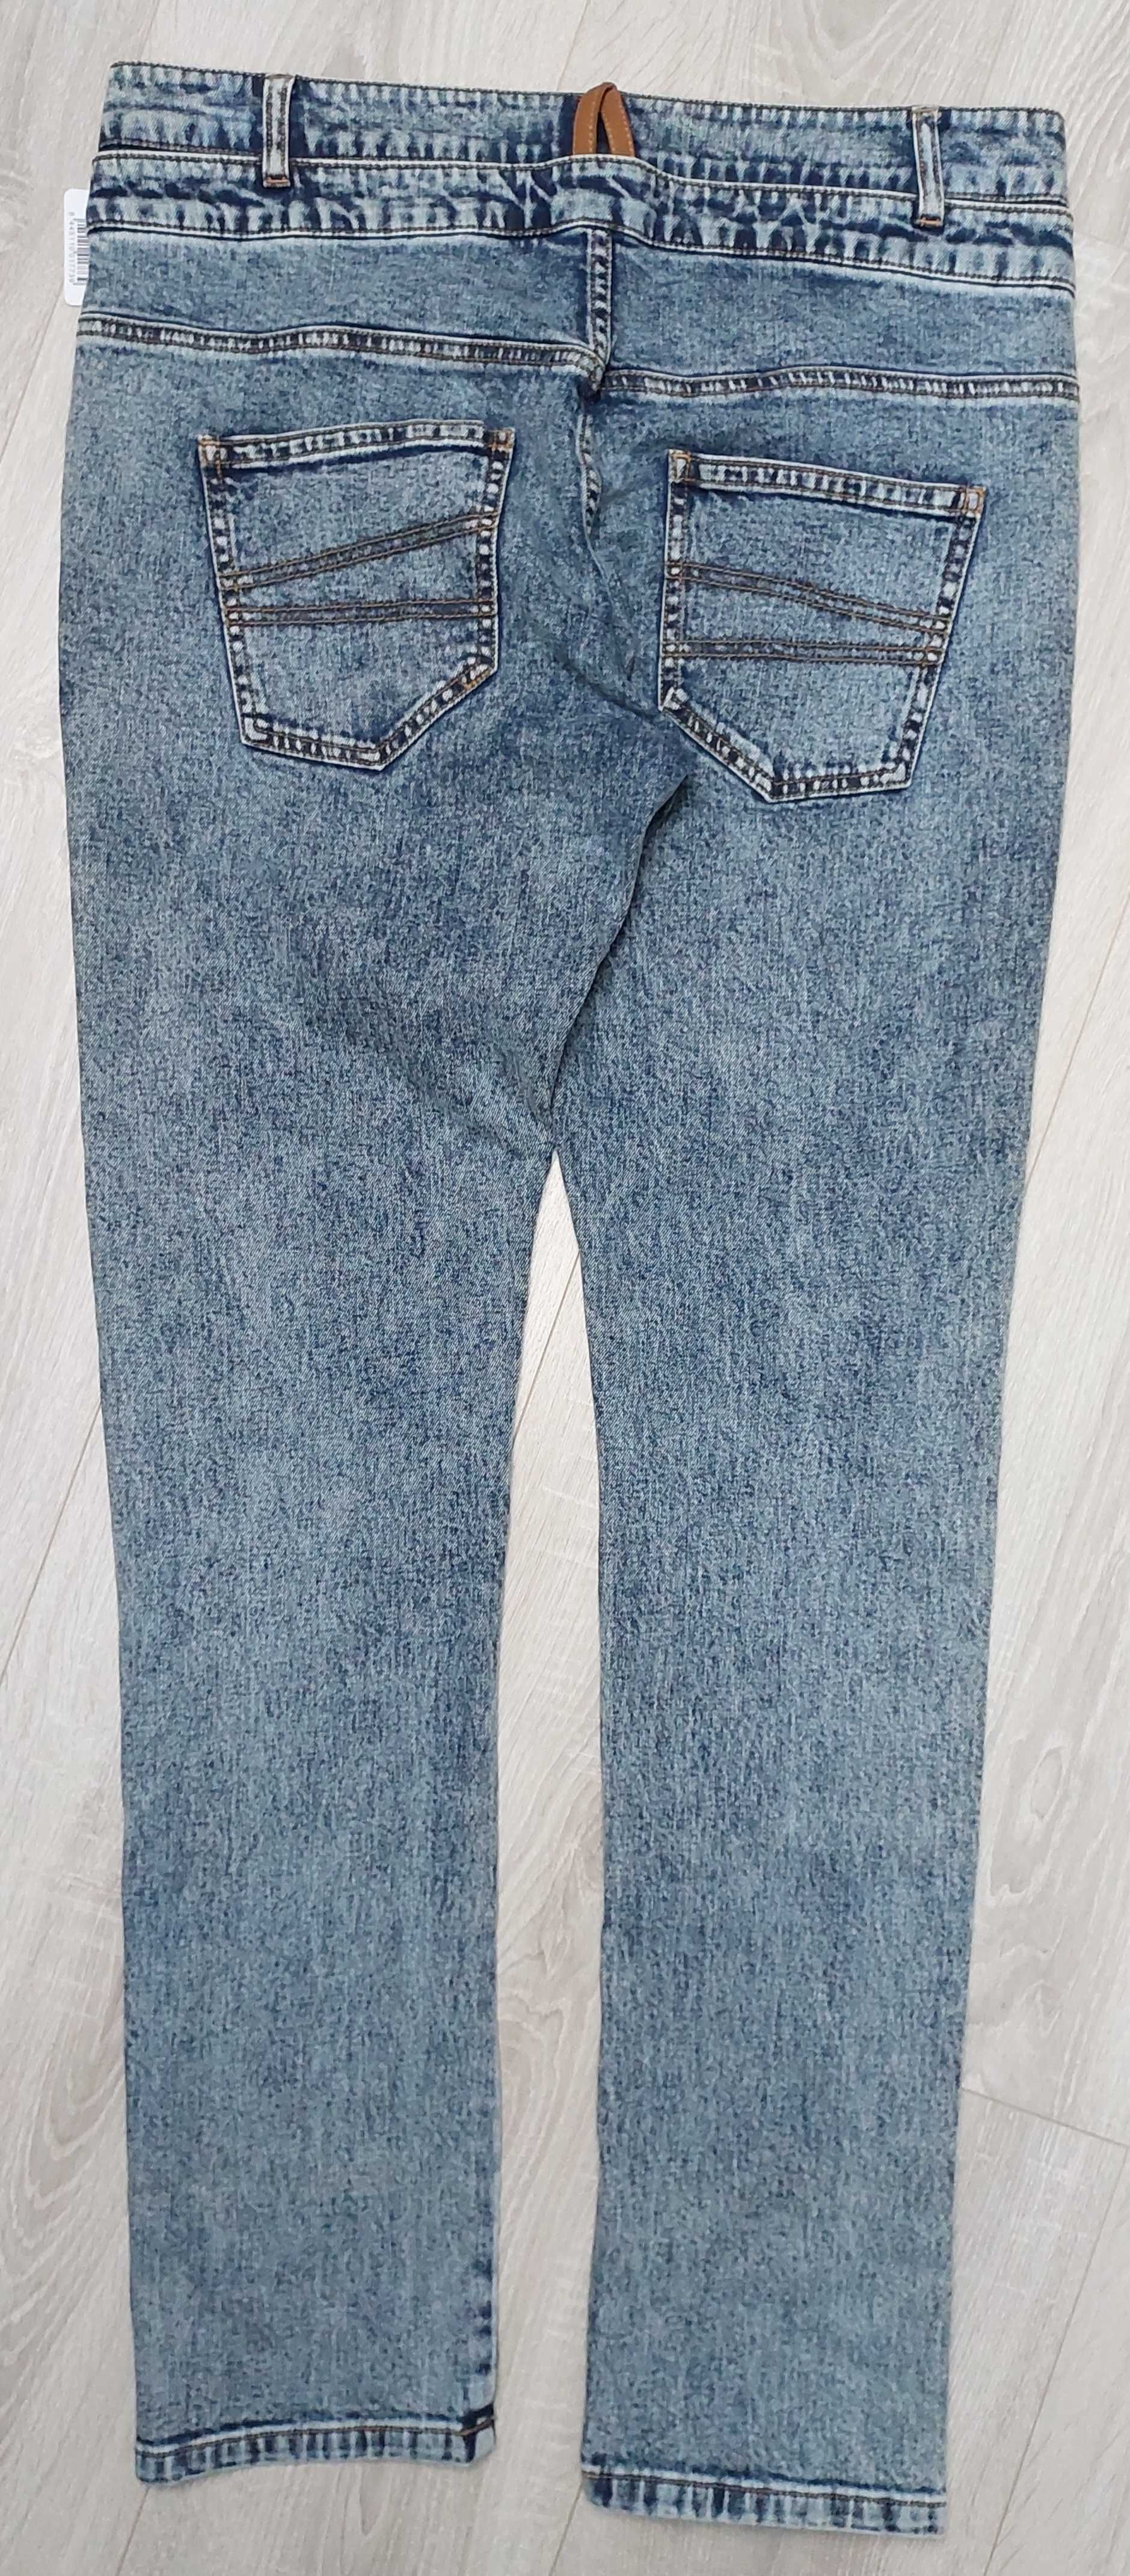 Spodnie jeansowe DESIGUAL, R. 34